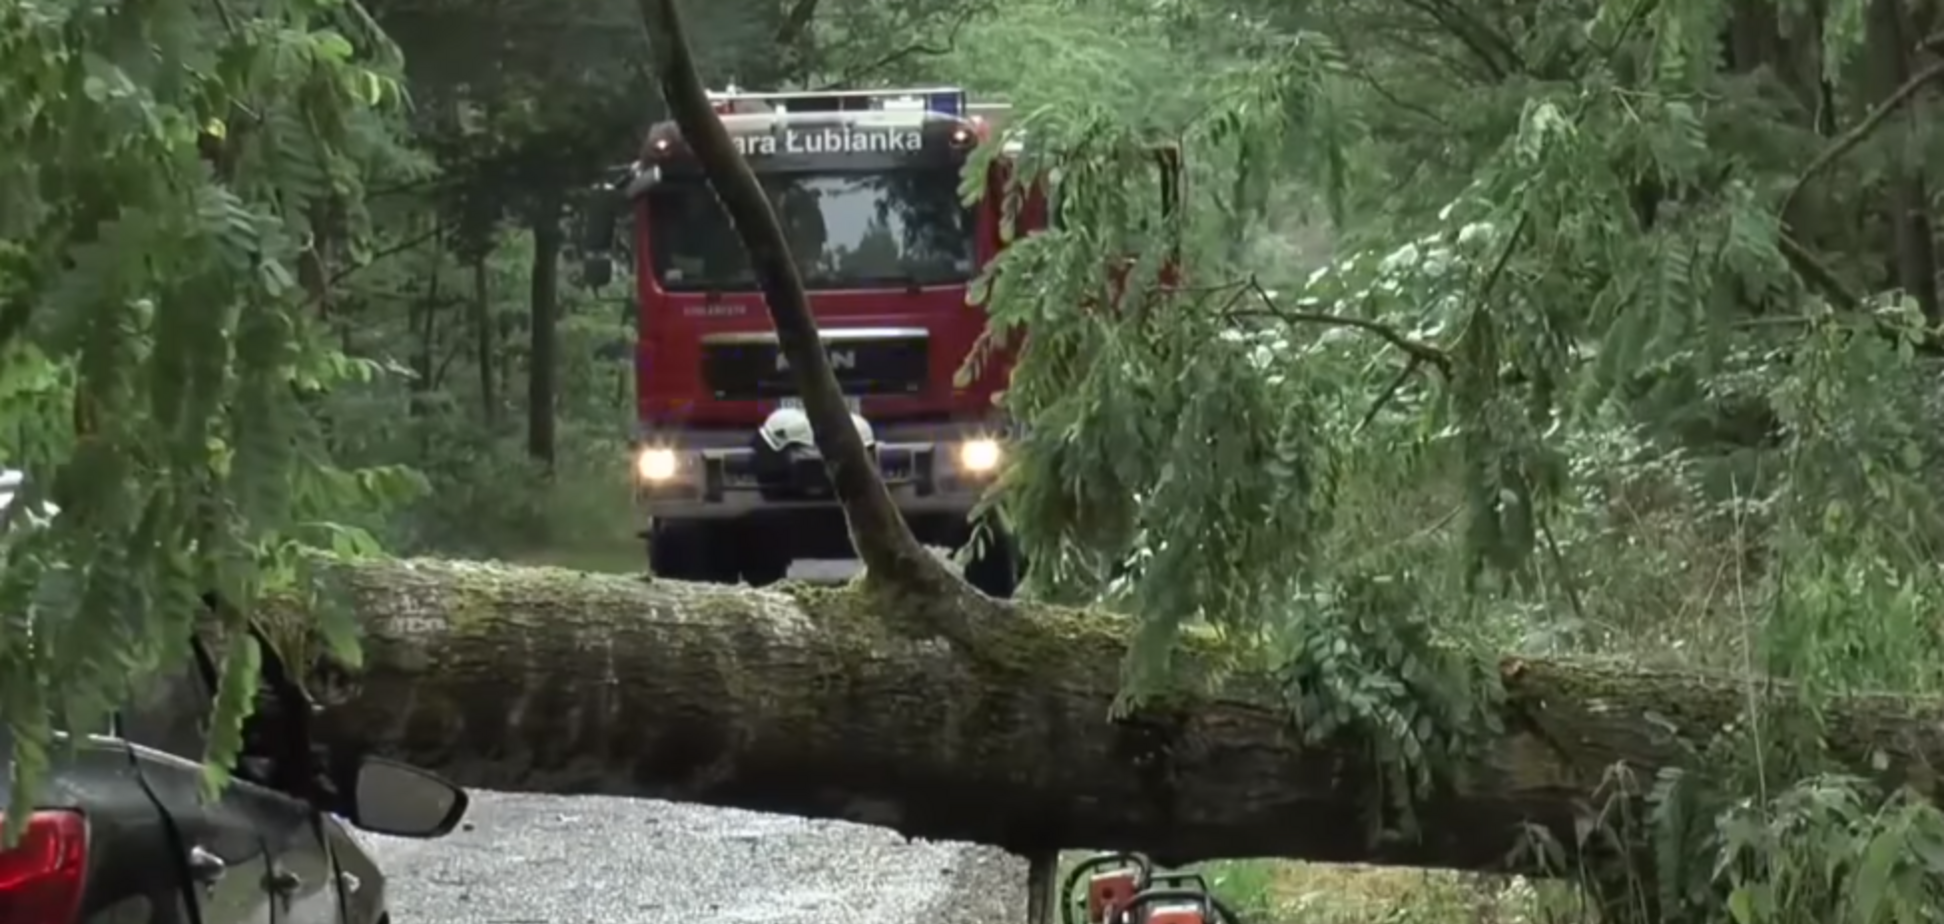 Пронісся потужний шторм: дерево вбило заступника мера польського міста